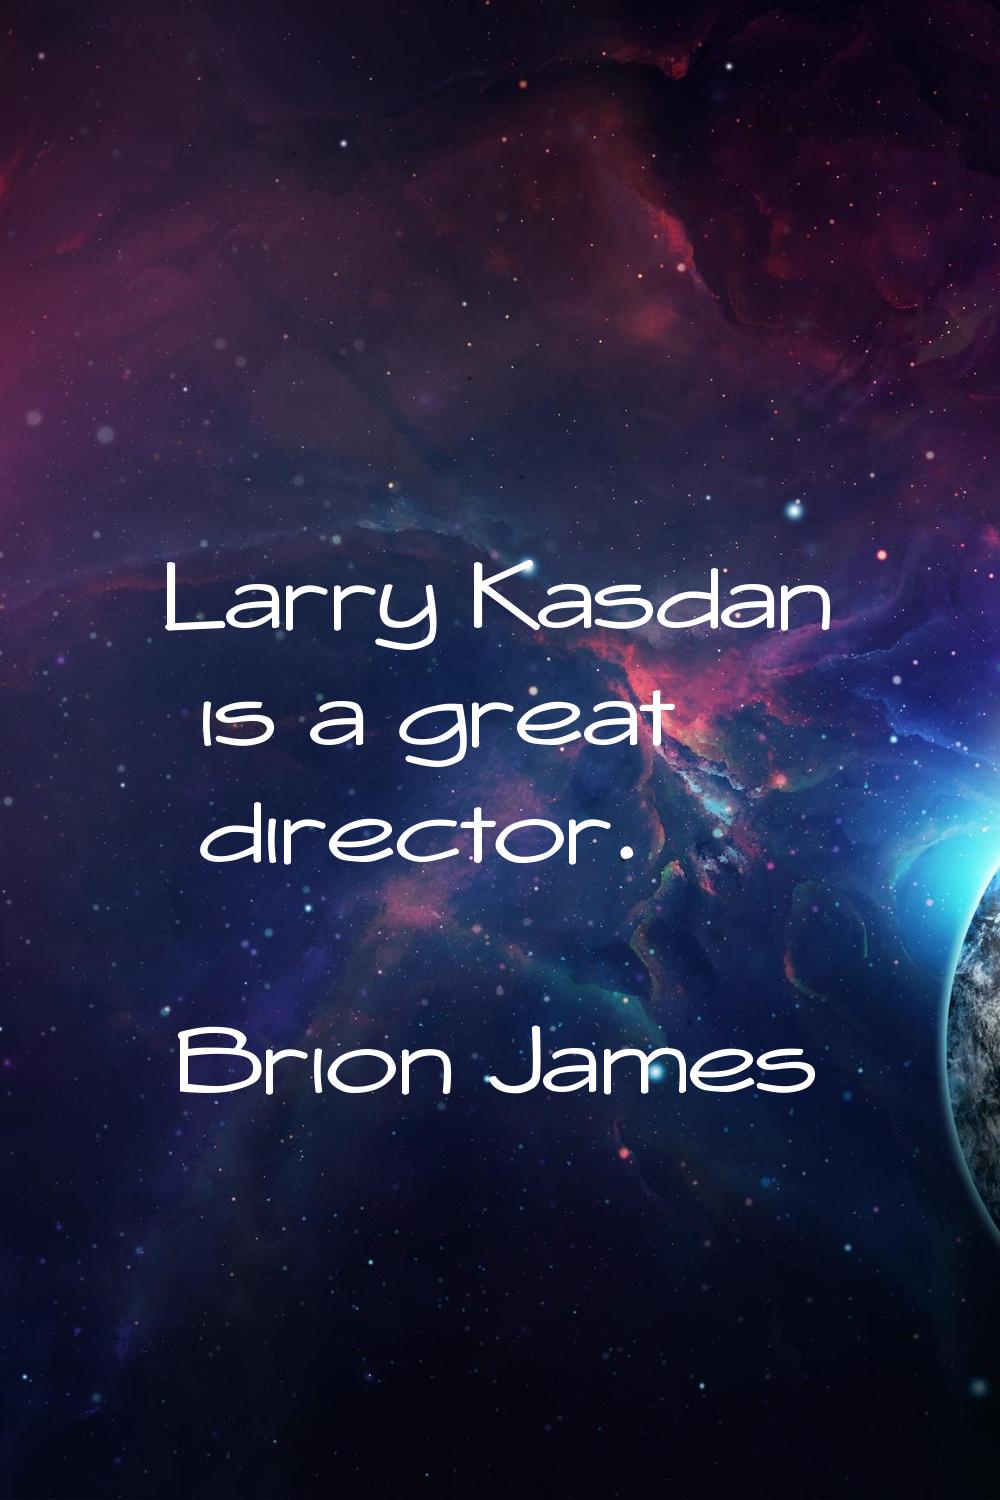 Larry Kasdan is a great director.